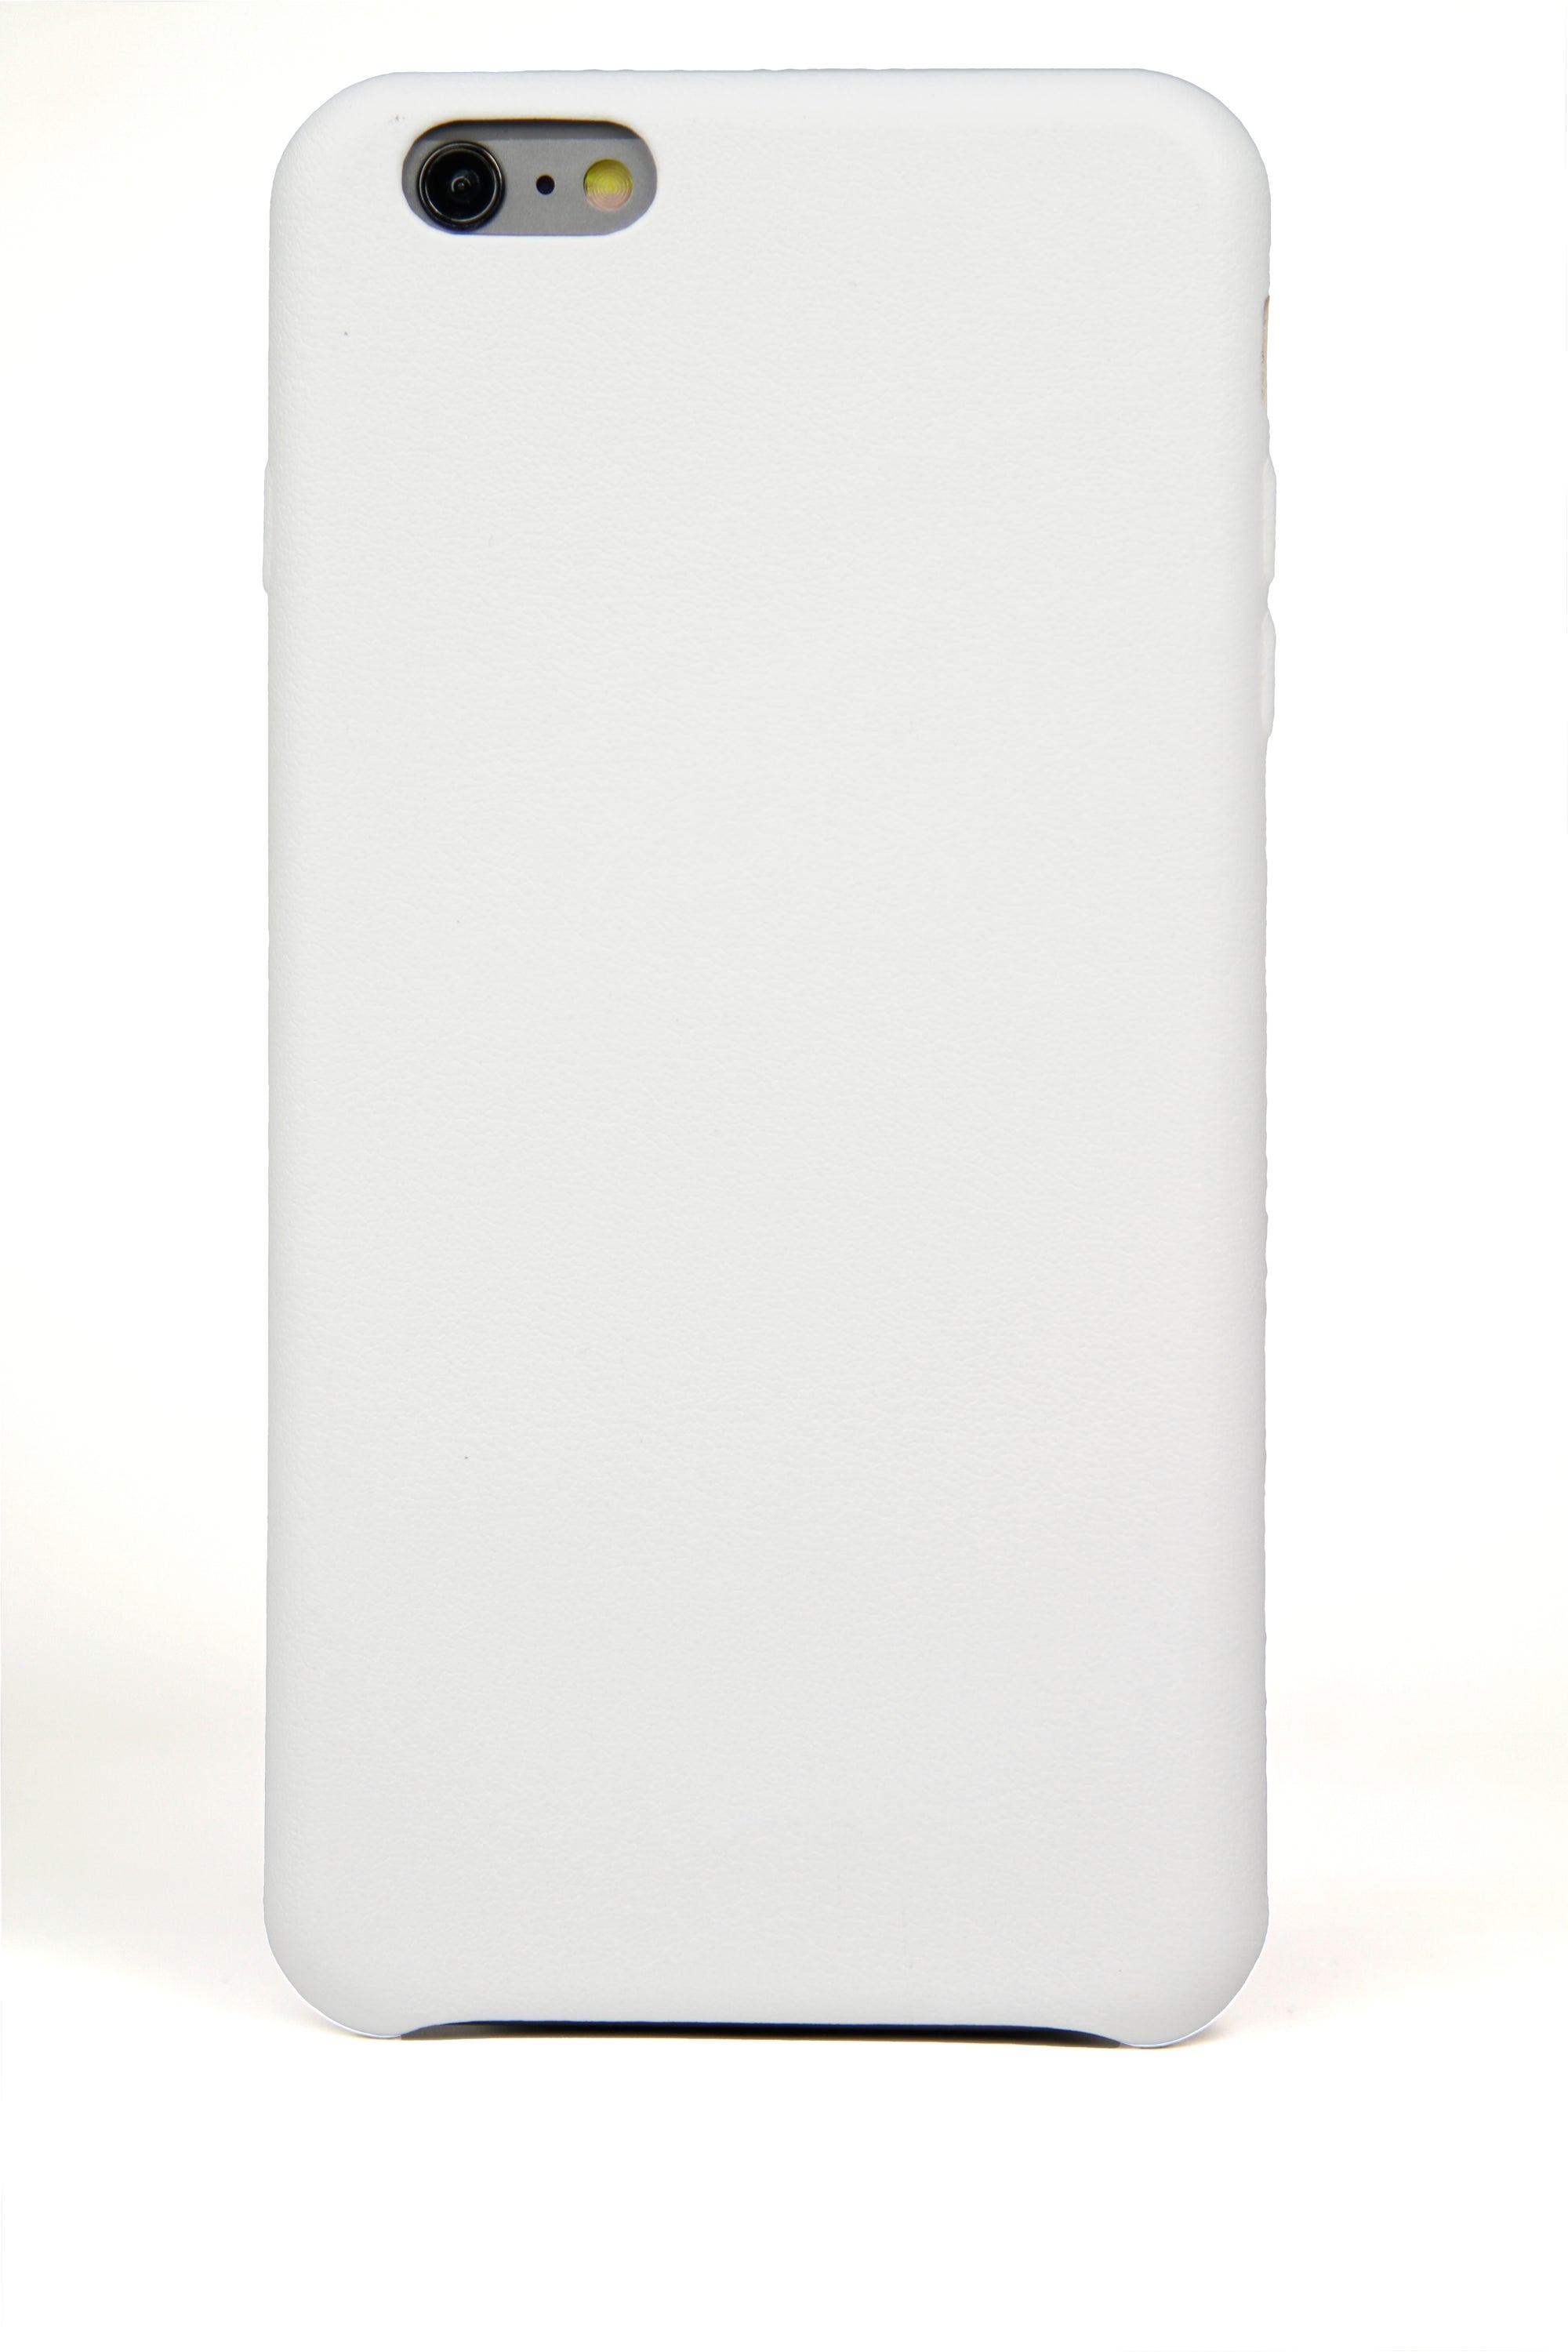 Coque iPhone 6 Plus, cuir blanc